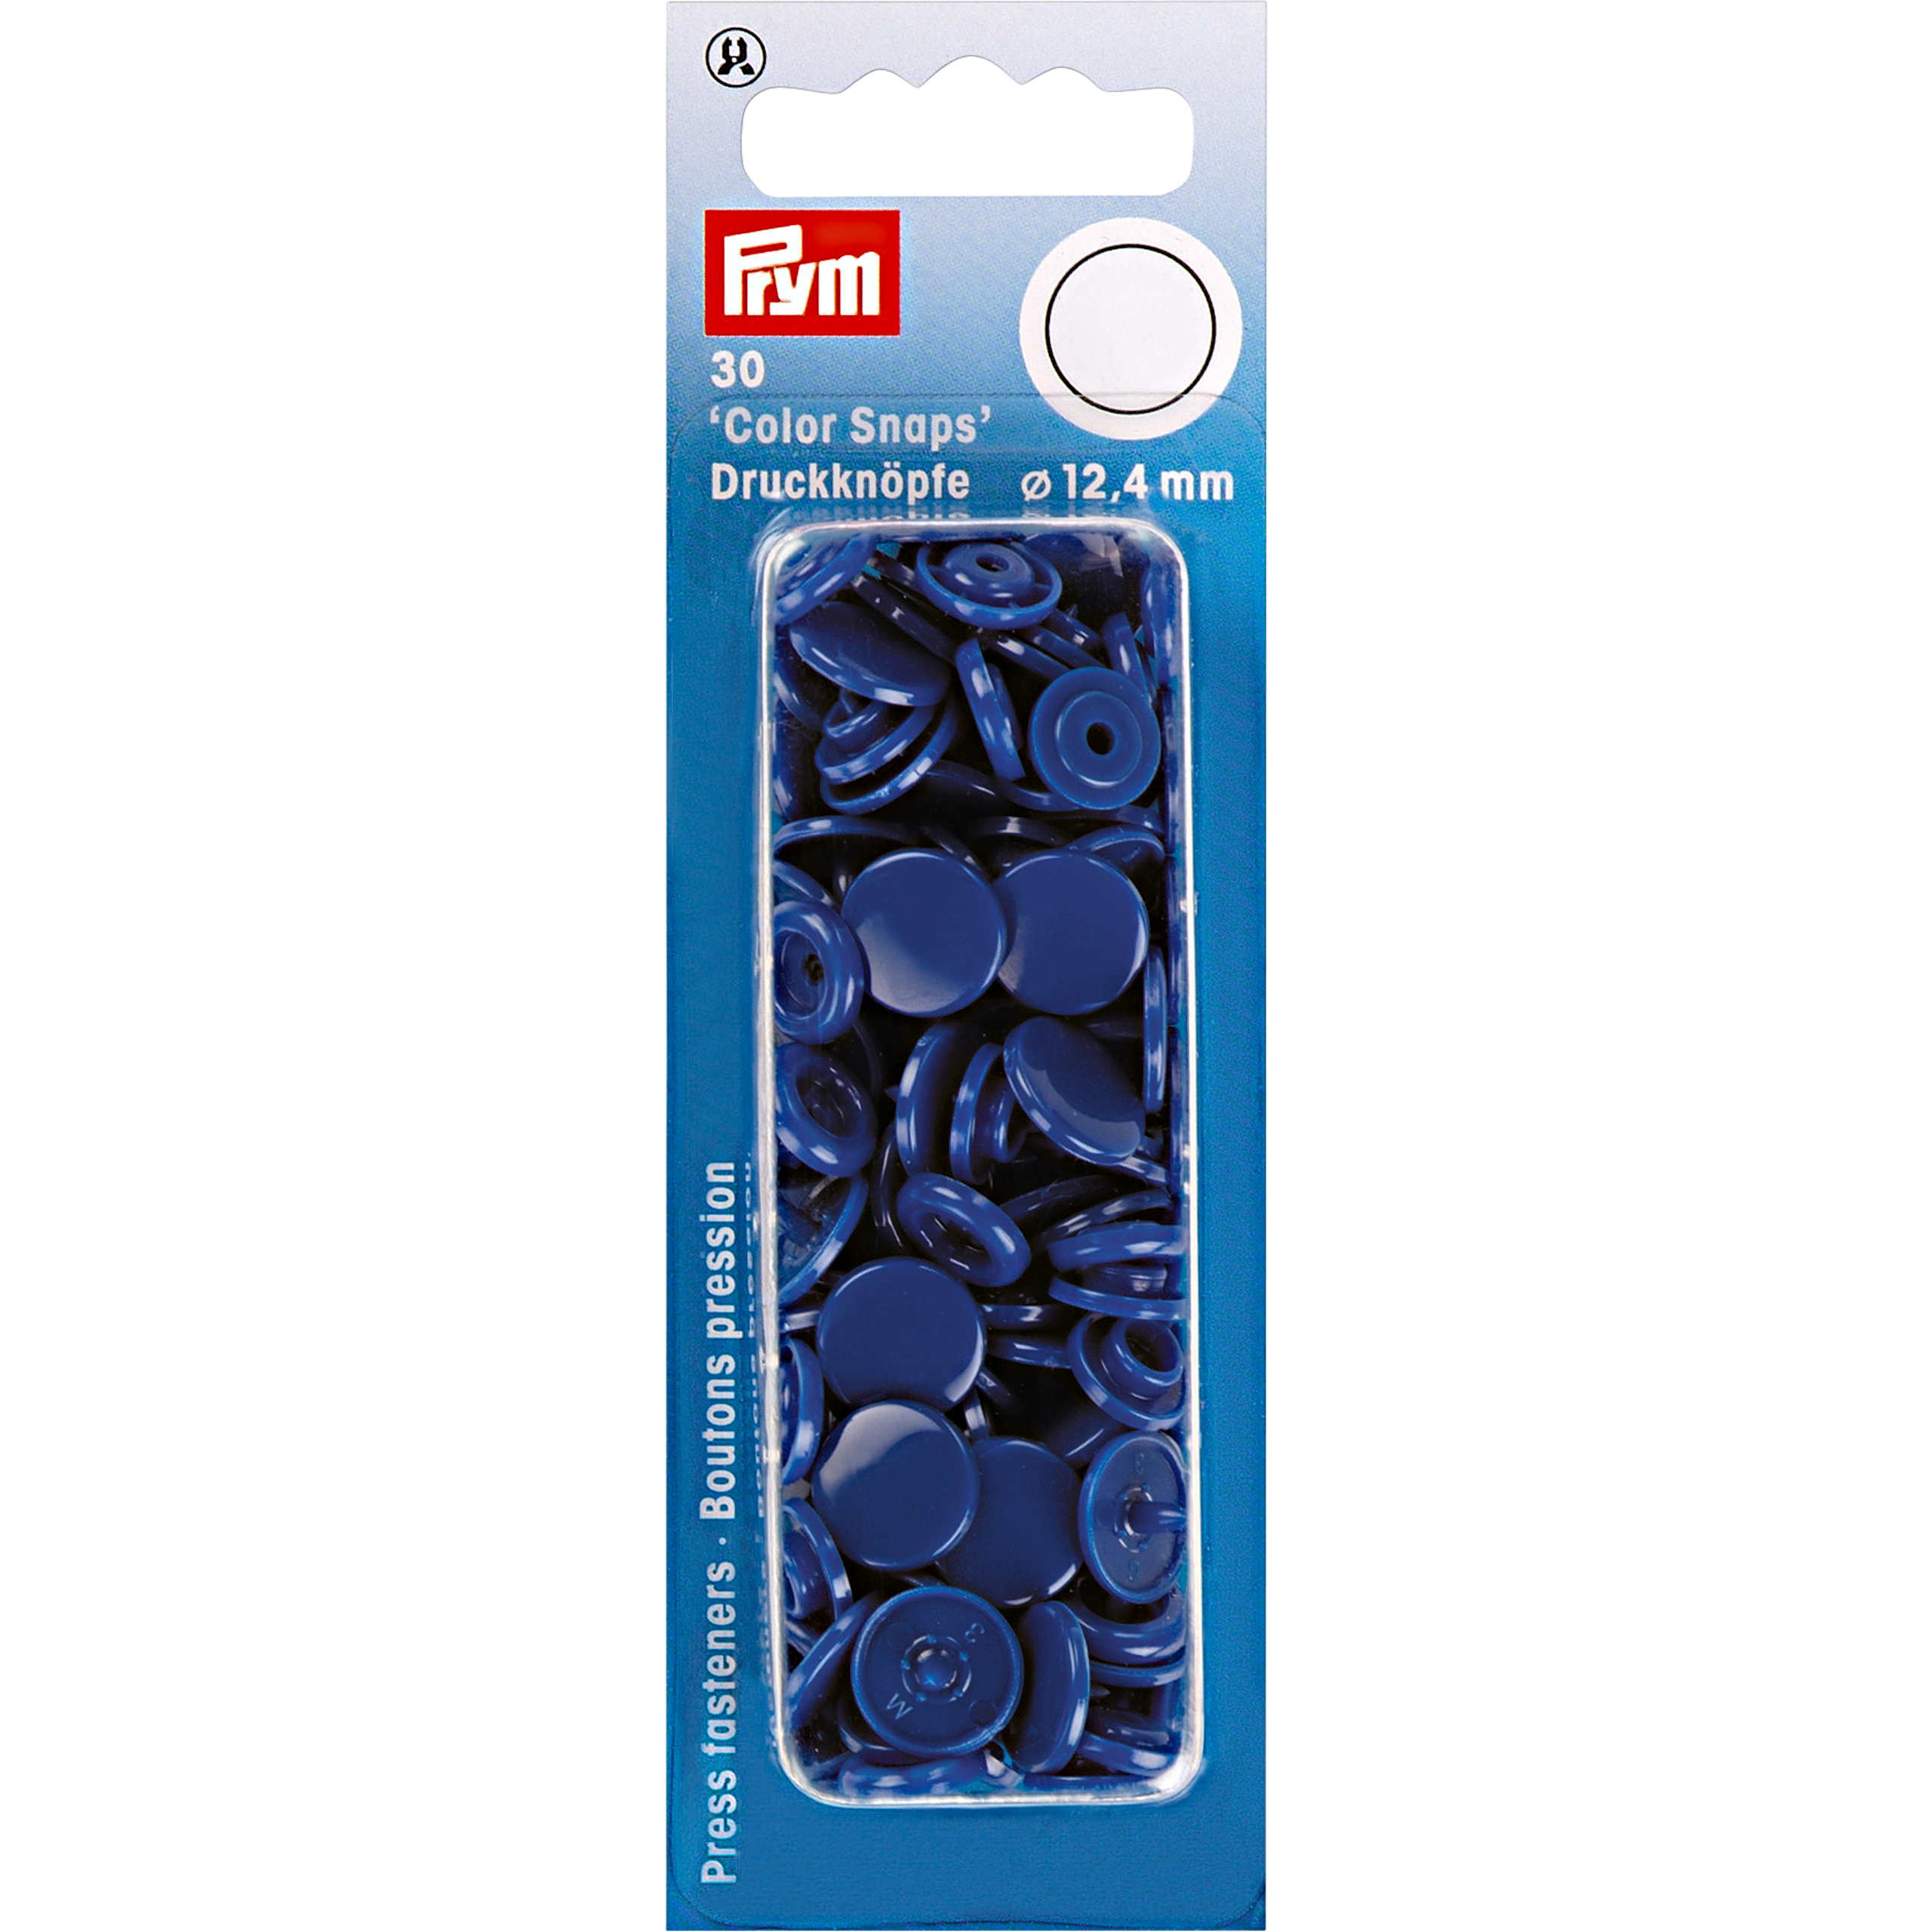 Nähfrei-Druckknöpfe Color Snaps rund 12,4 mm 30 St von Prym königsblau